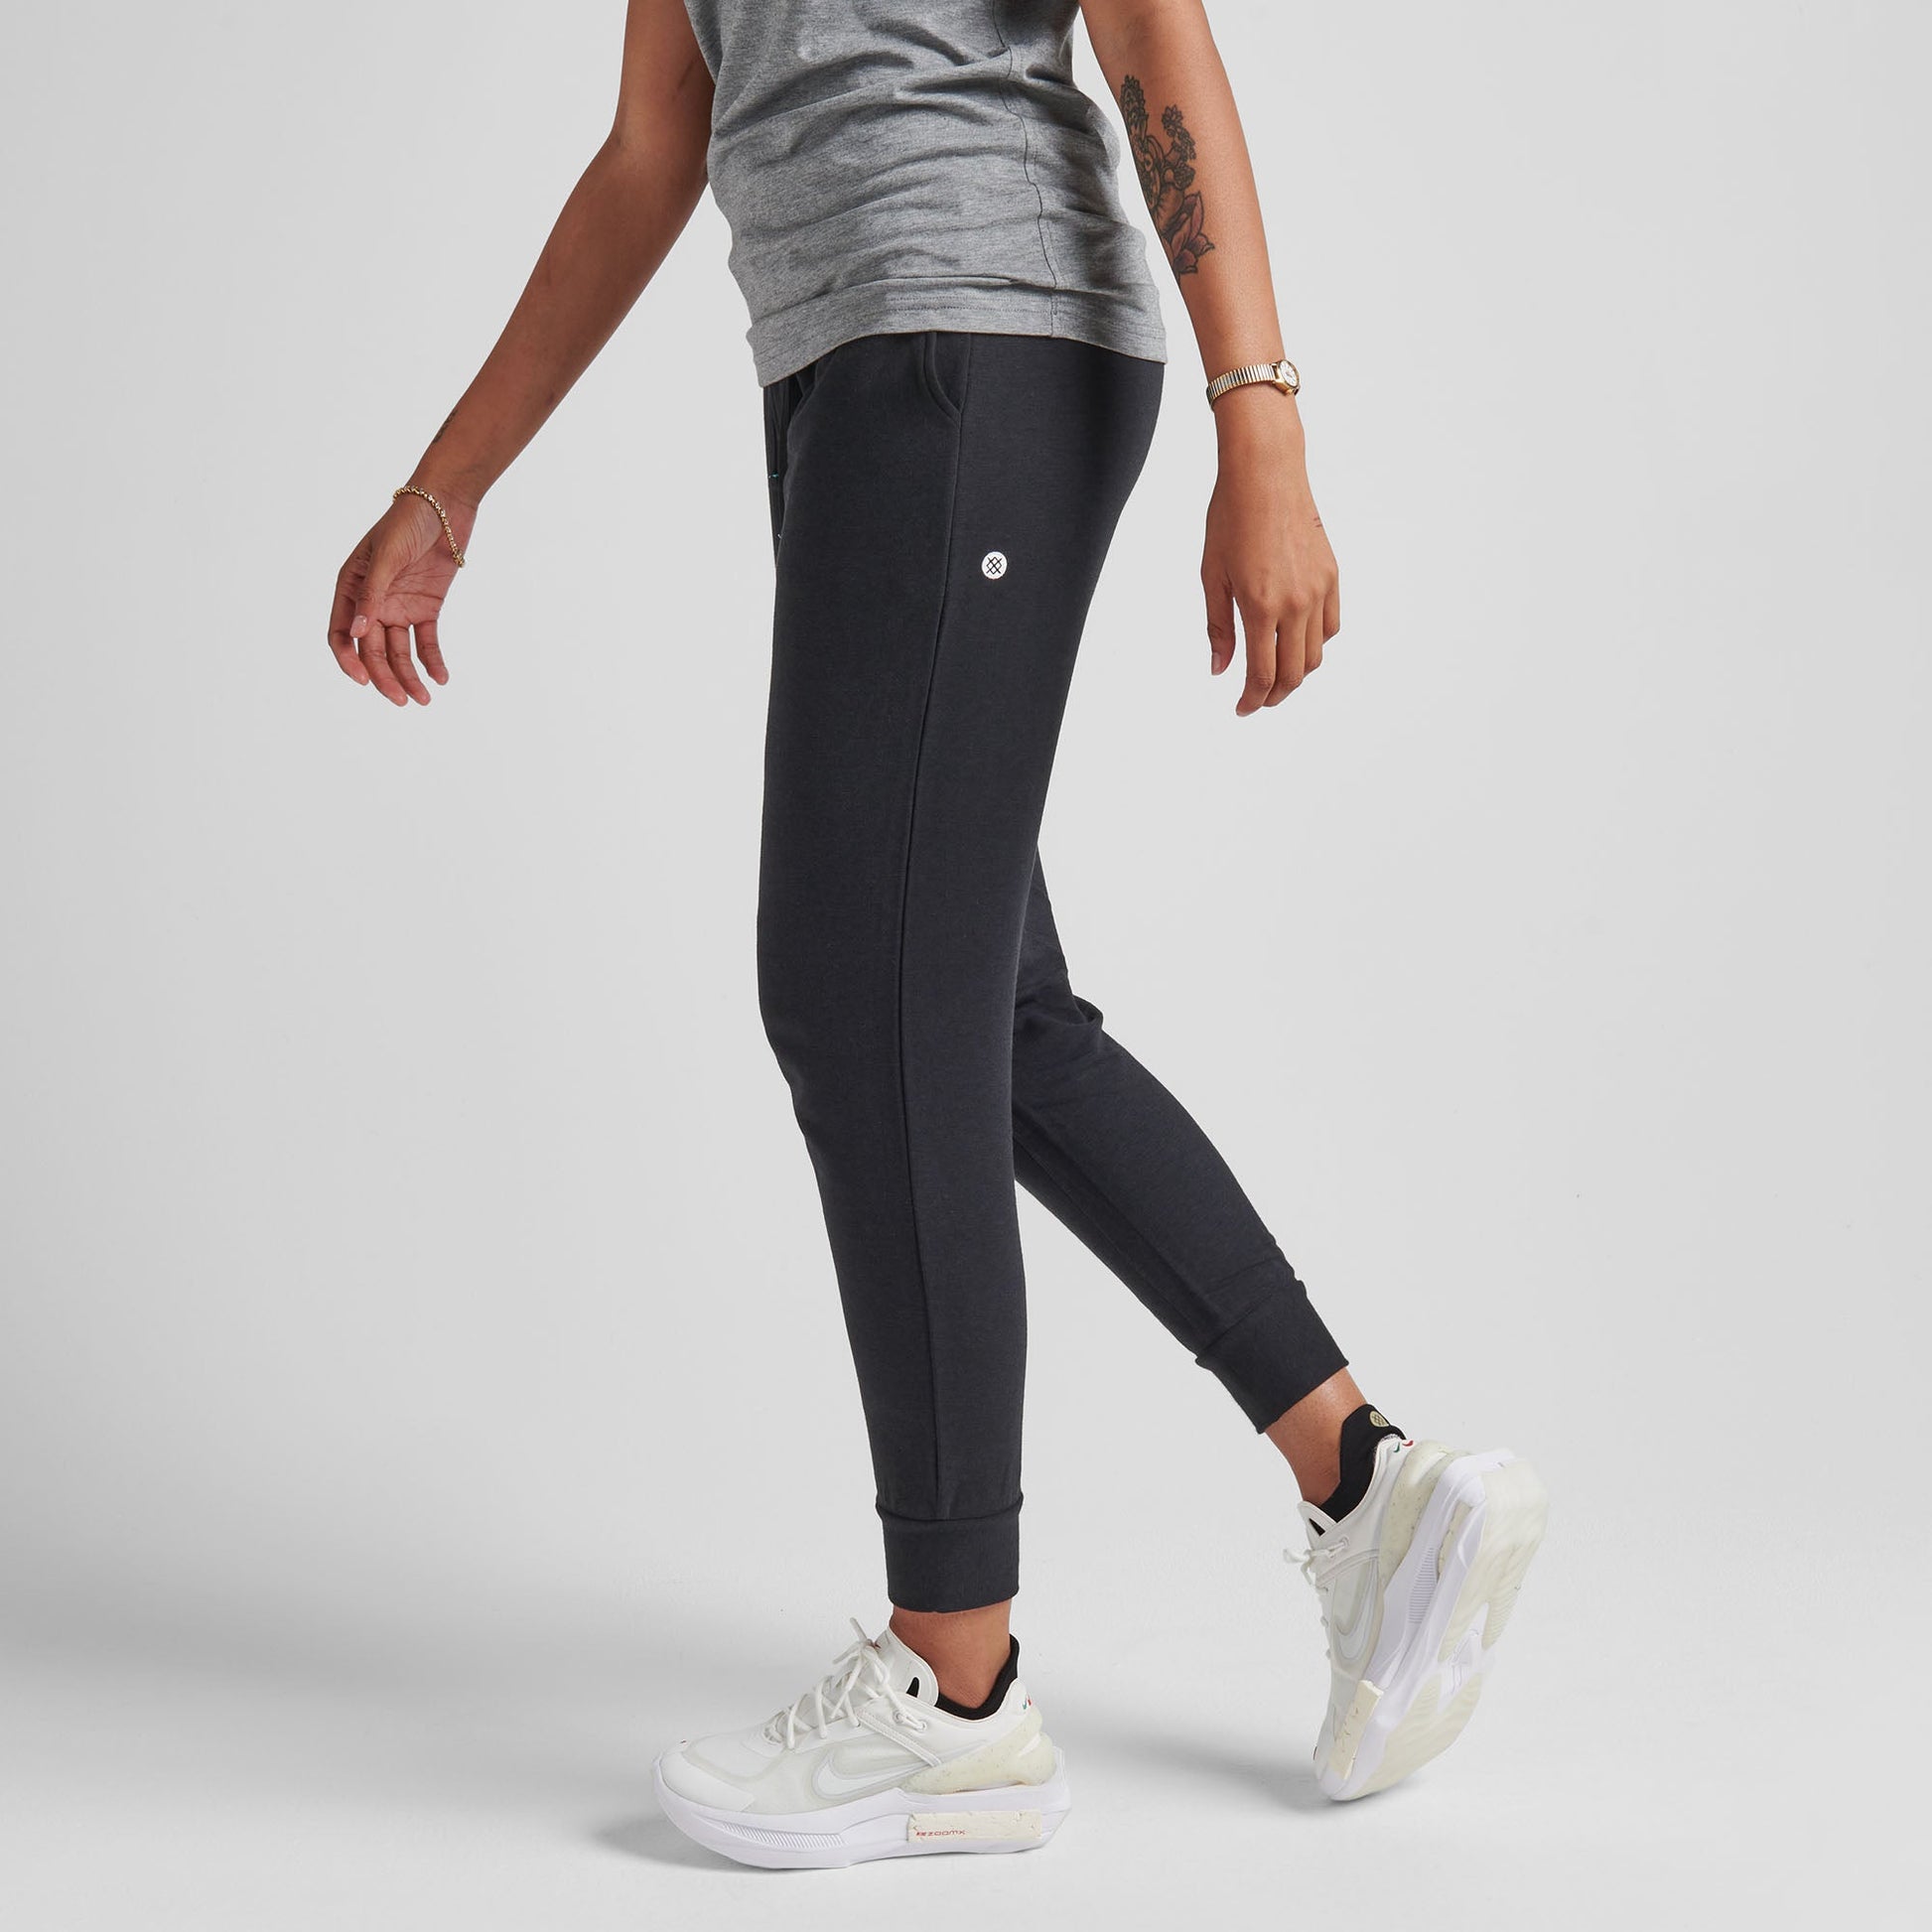 Pantalon de jogging femme noir Shelter de Stance | modèle